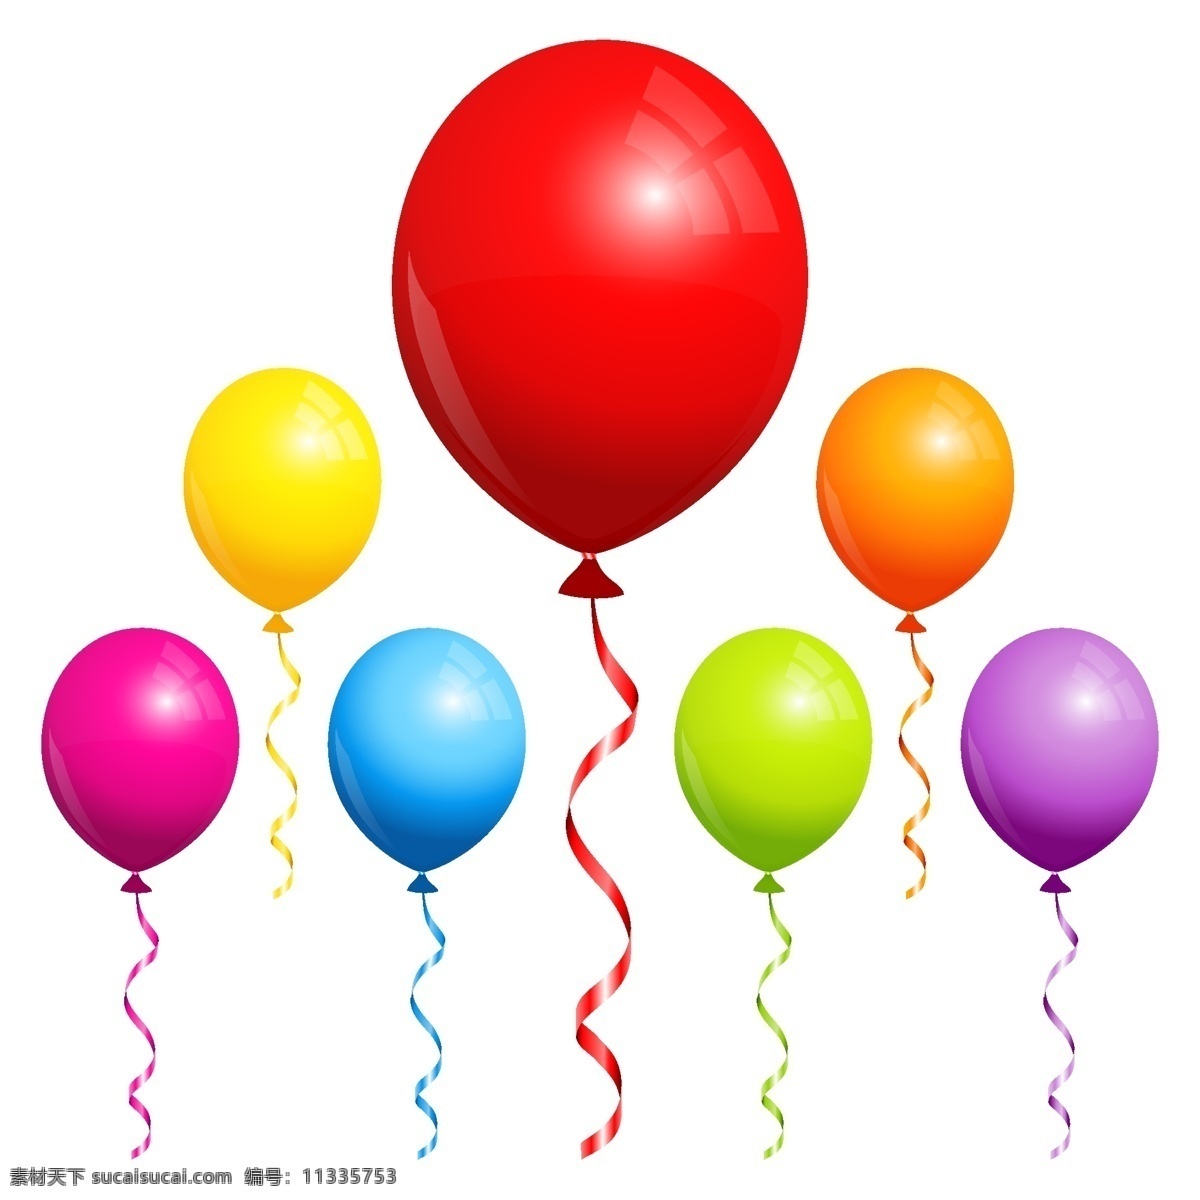 矢量心形气球 矢量彩色气球 矢量活动气球 矢量节日气球 卡通素材 可爱 手绘素材 儿童素材 幼儿园素材 卡通 矢量 抽象设计 时尚 矢量素材 生日 贺卡 节日 彩色气球 卡通气球 矢量气球 气球素材 五颜六色 炫丽气球 蓝色气球 红色气球 黄色气球